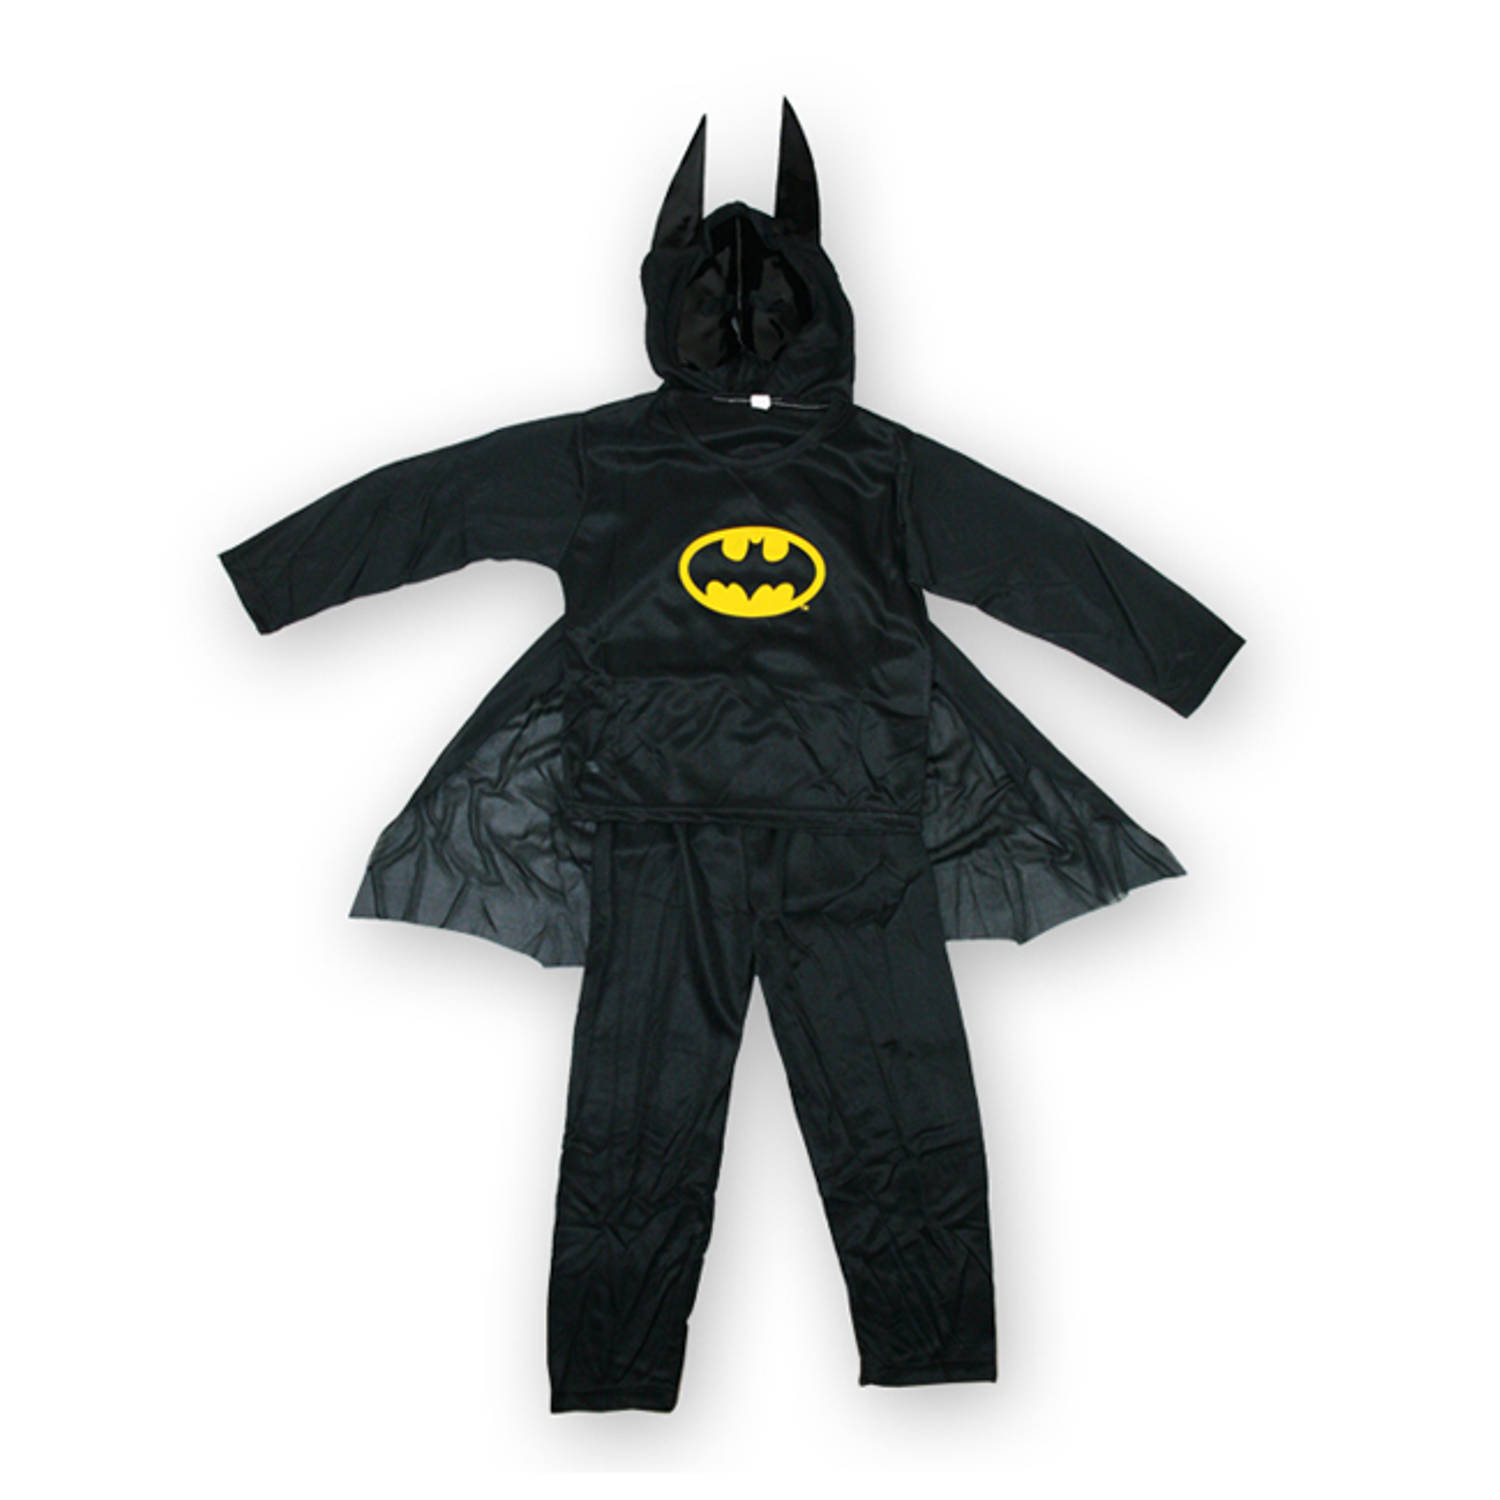 Delegatie Verward Vijfde Batman kostuum voor kinderen maat M 110 - 120cm - verkleedkleding -  carnavalskleding | Blokker